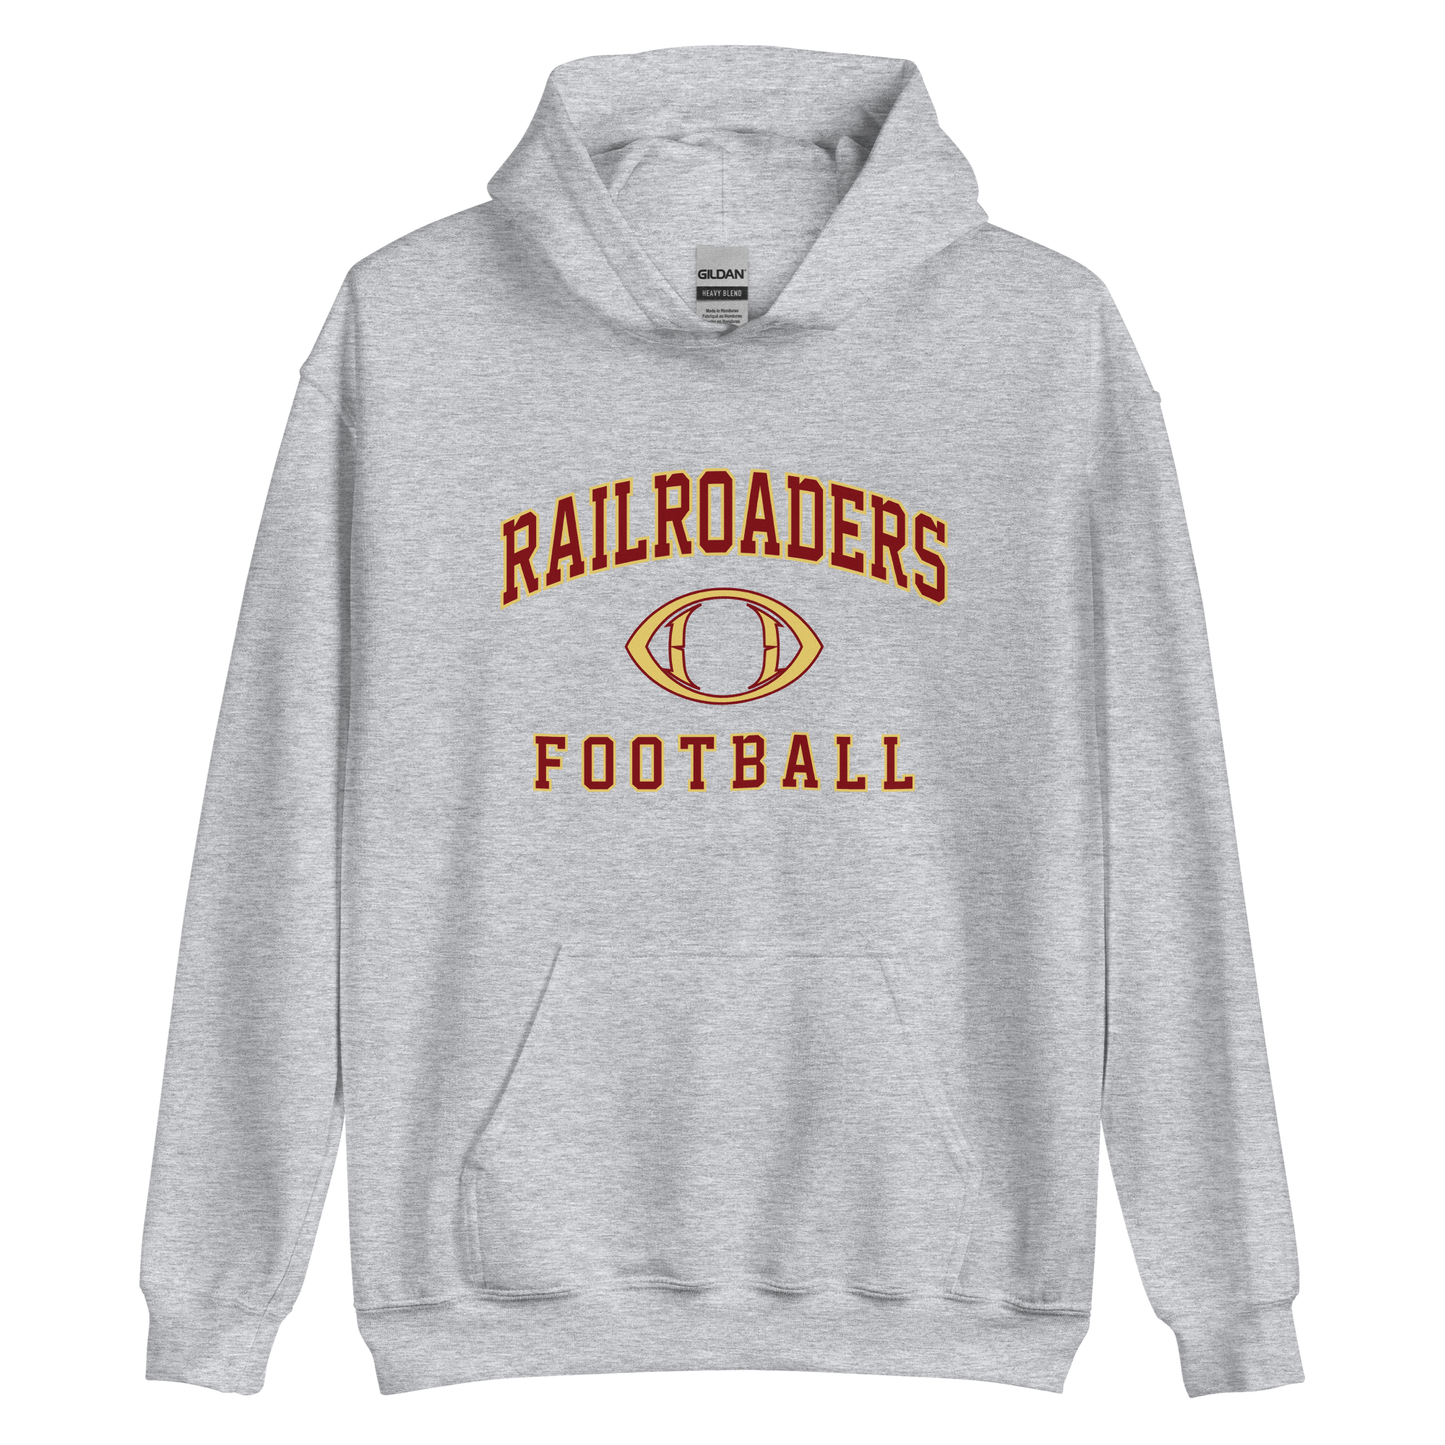 Railroaders Football Unisex Hoodie